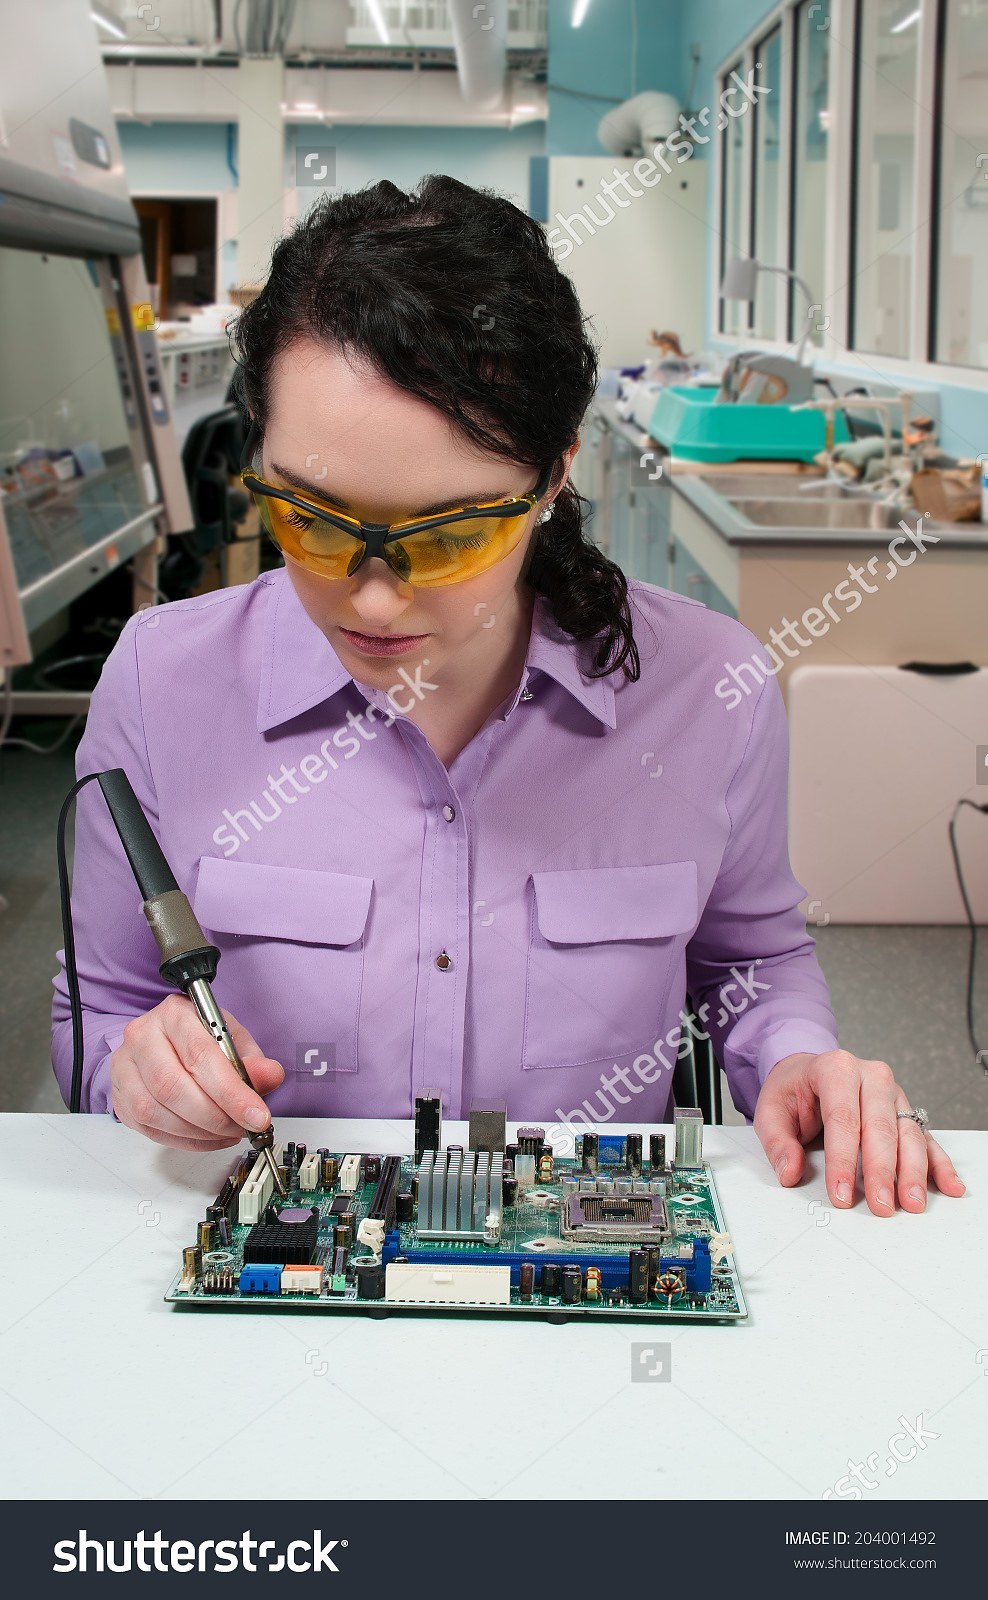 stock-photo-beautiful-woman-repair-soldering-a-printed-circuit-board-204001492.jpg